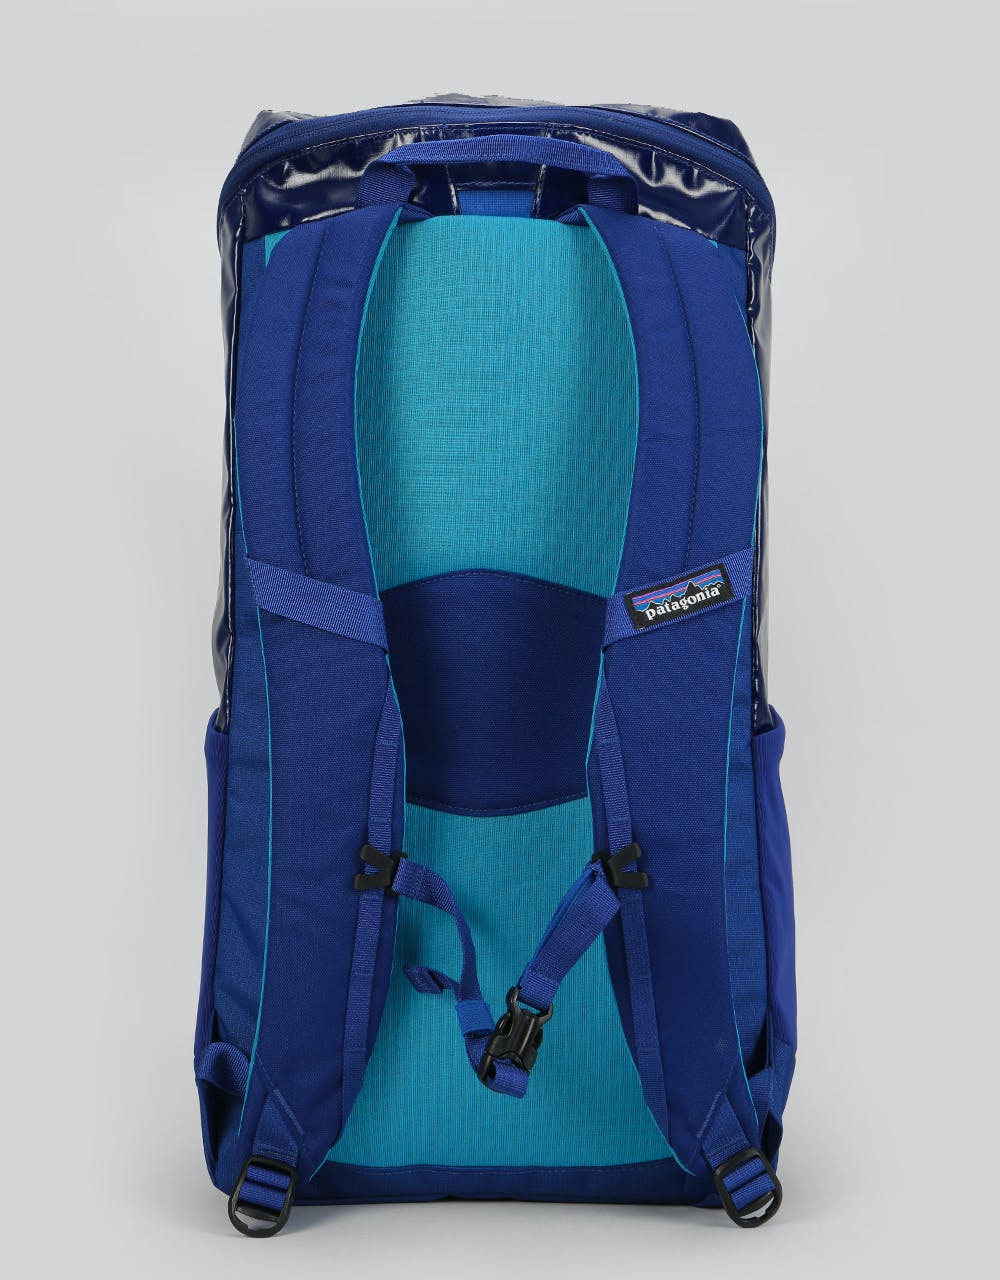 Patagonia Black Hole Pack 25L Backpack - Cobalt Blue